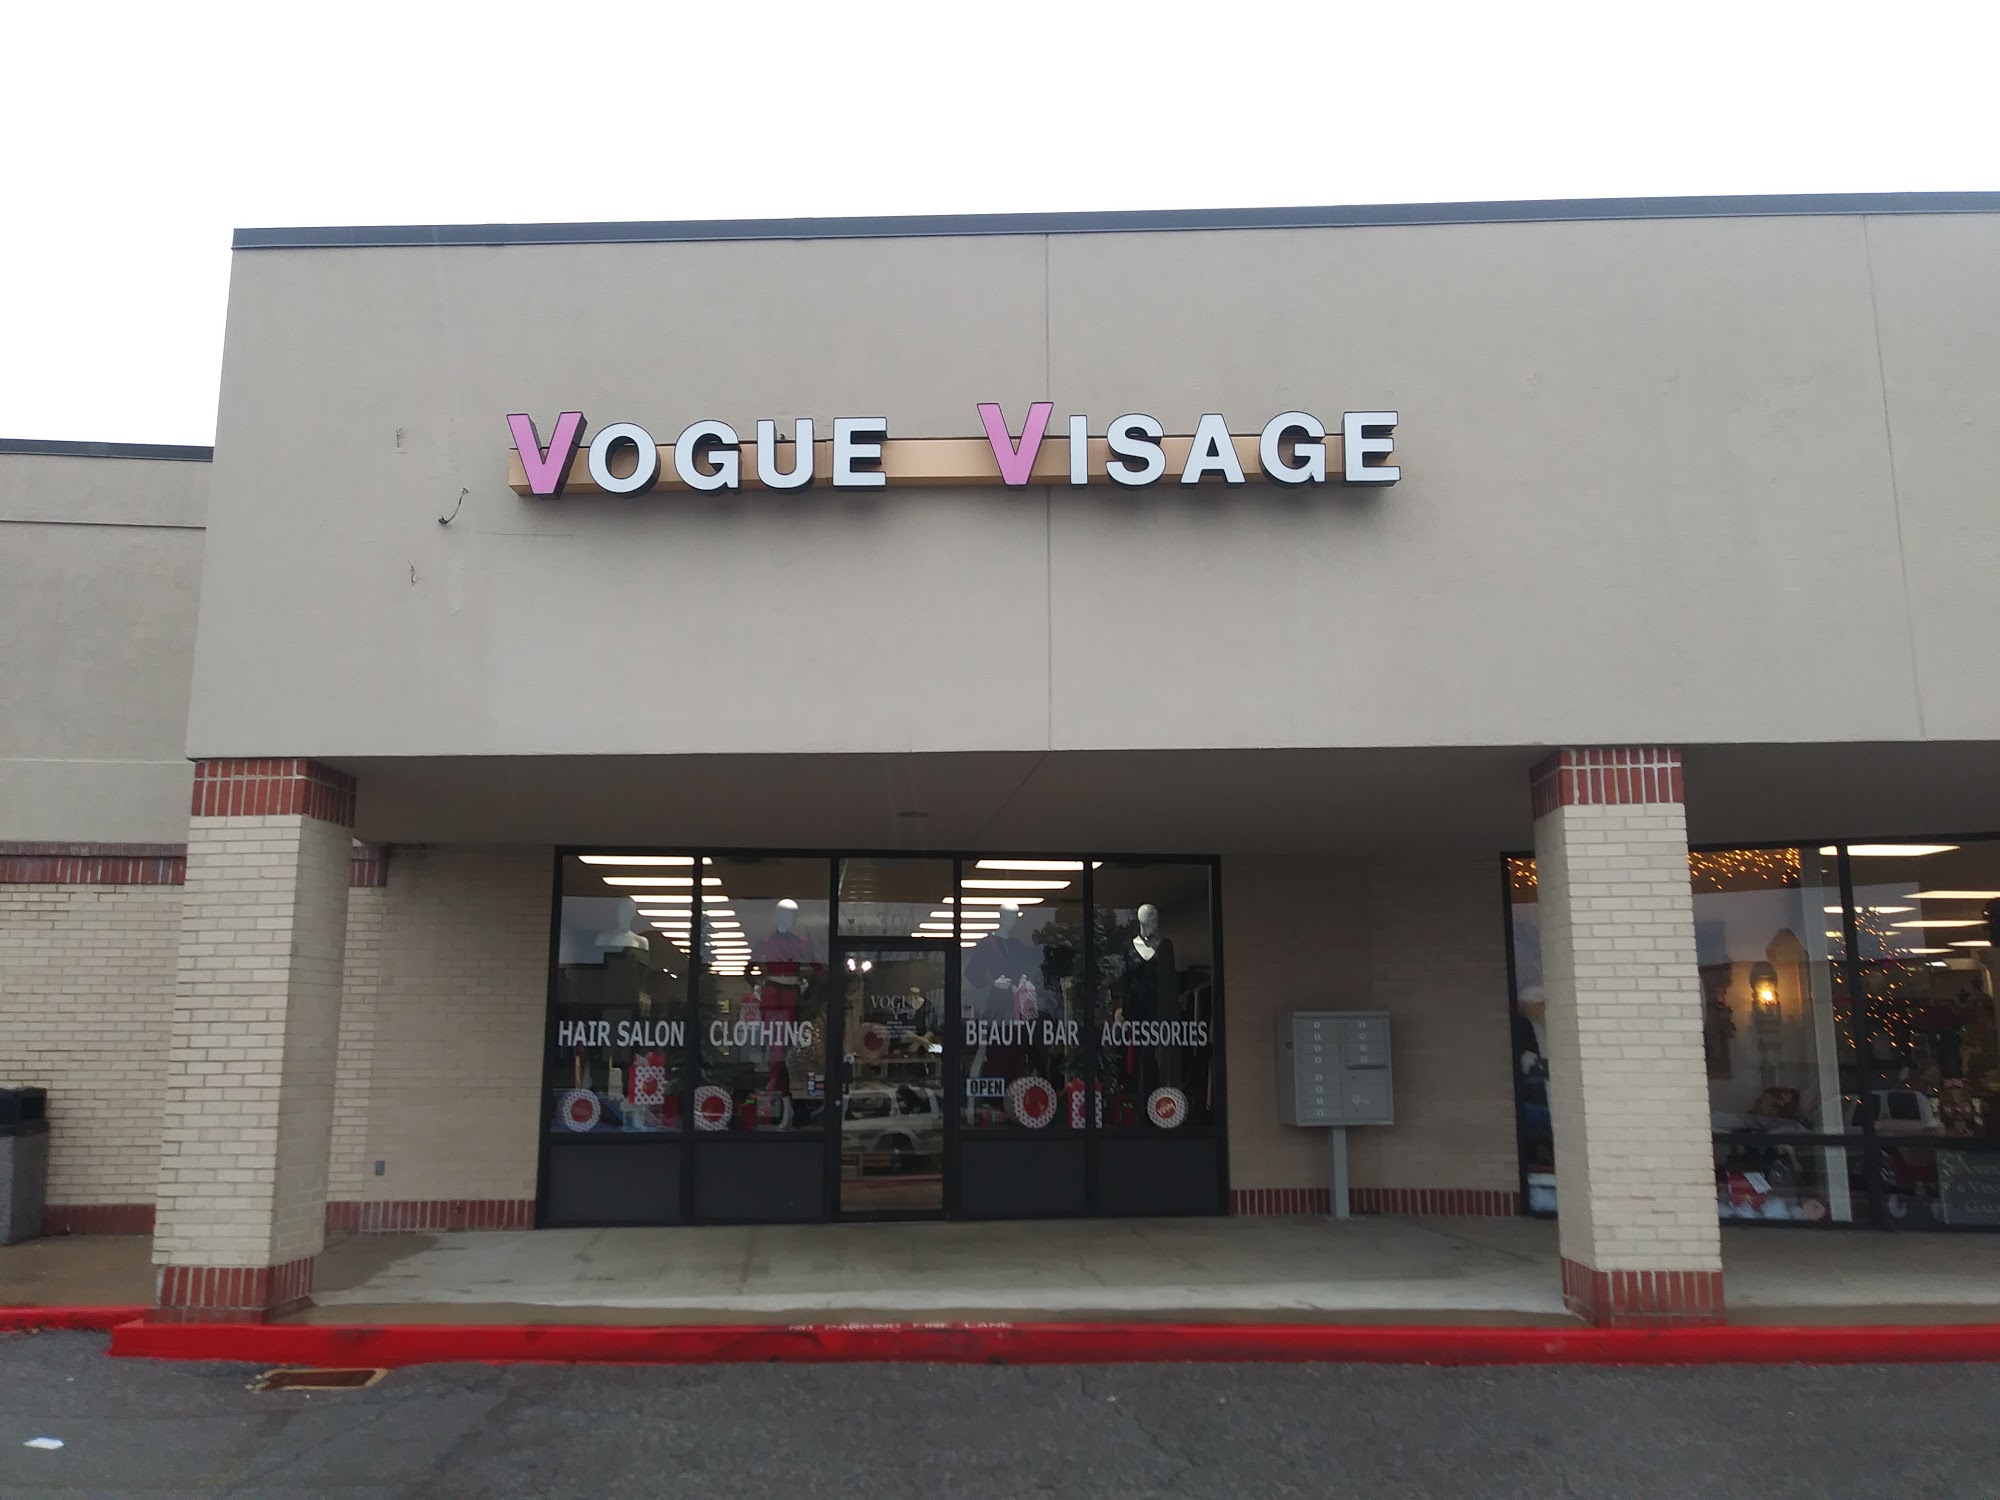 Vogue Visage Salon and Boutique